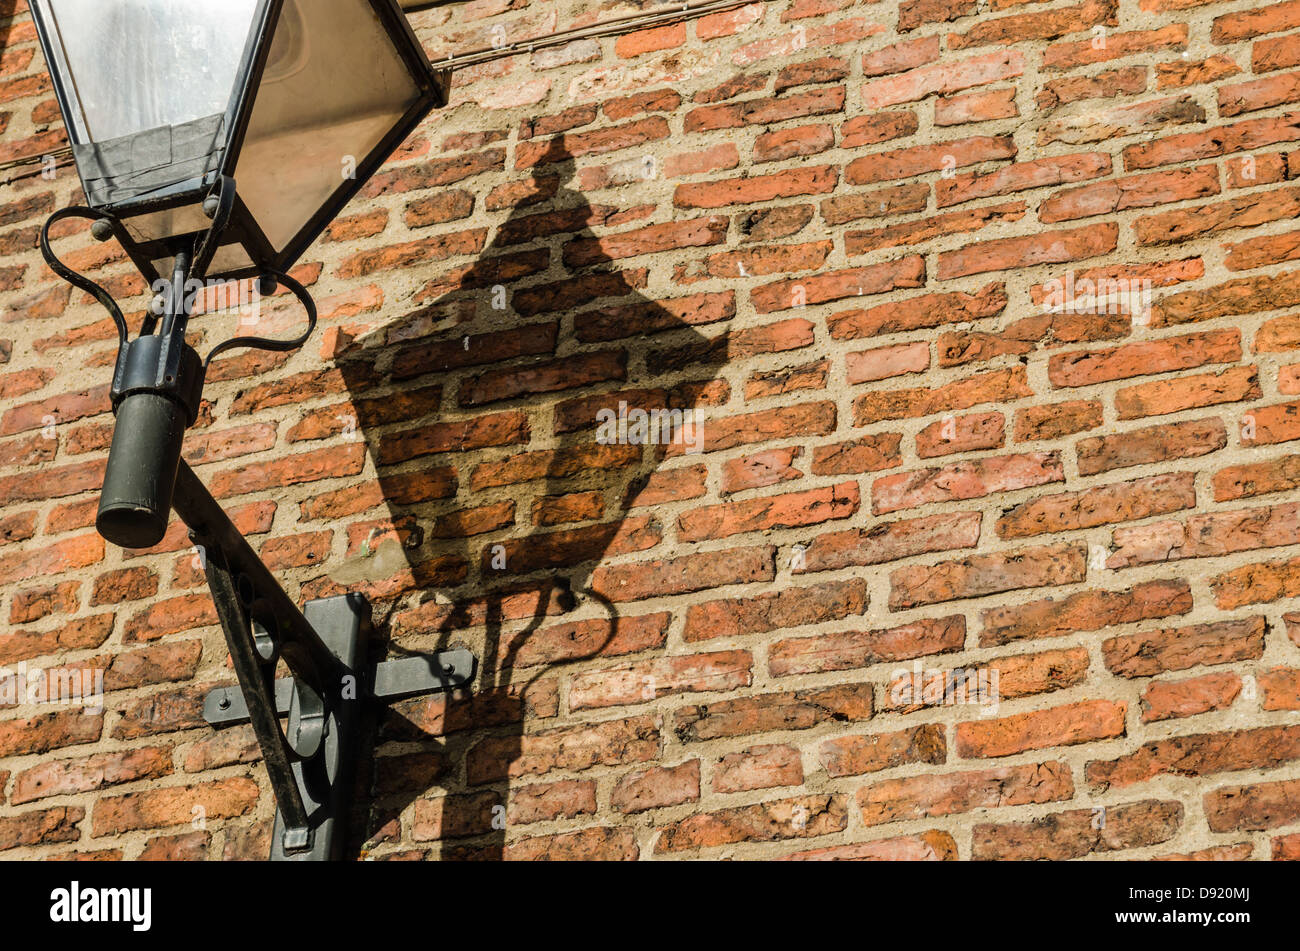 Lampe wirft einen Schatten auf einer roten Backsteinmauer. York, North Yorkshire, England. Stockfoto